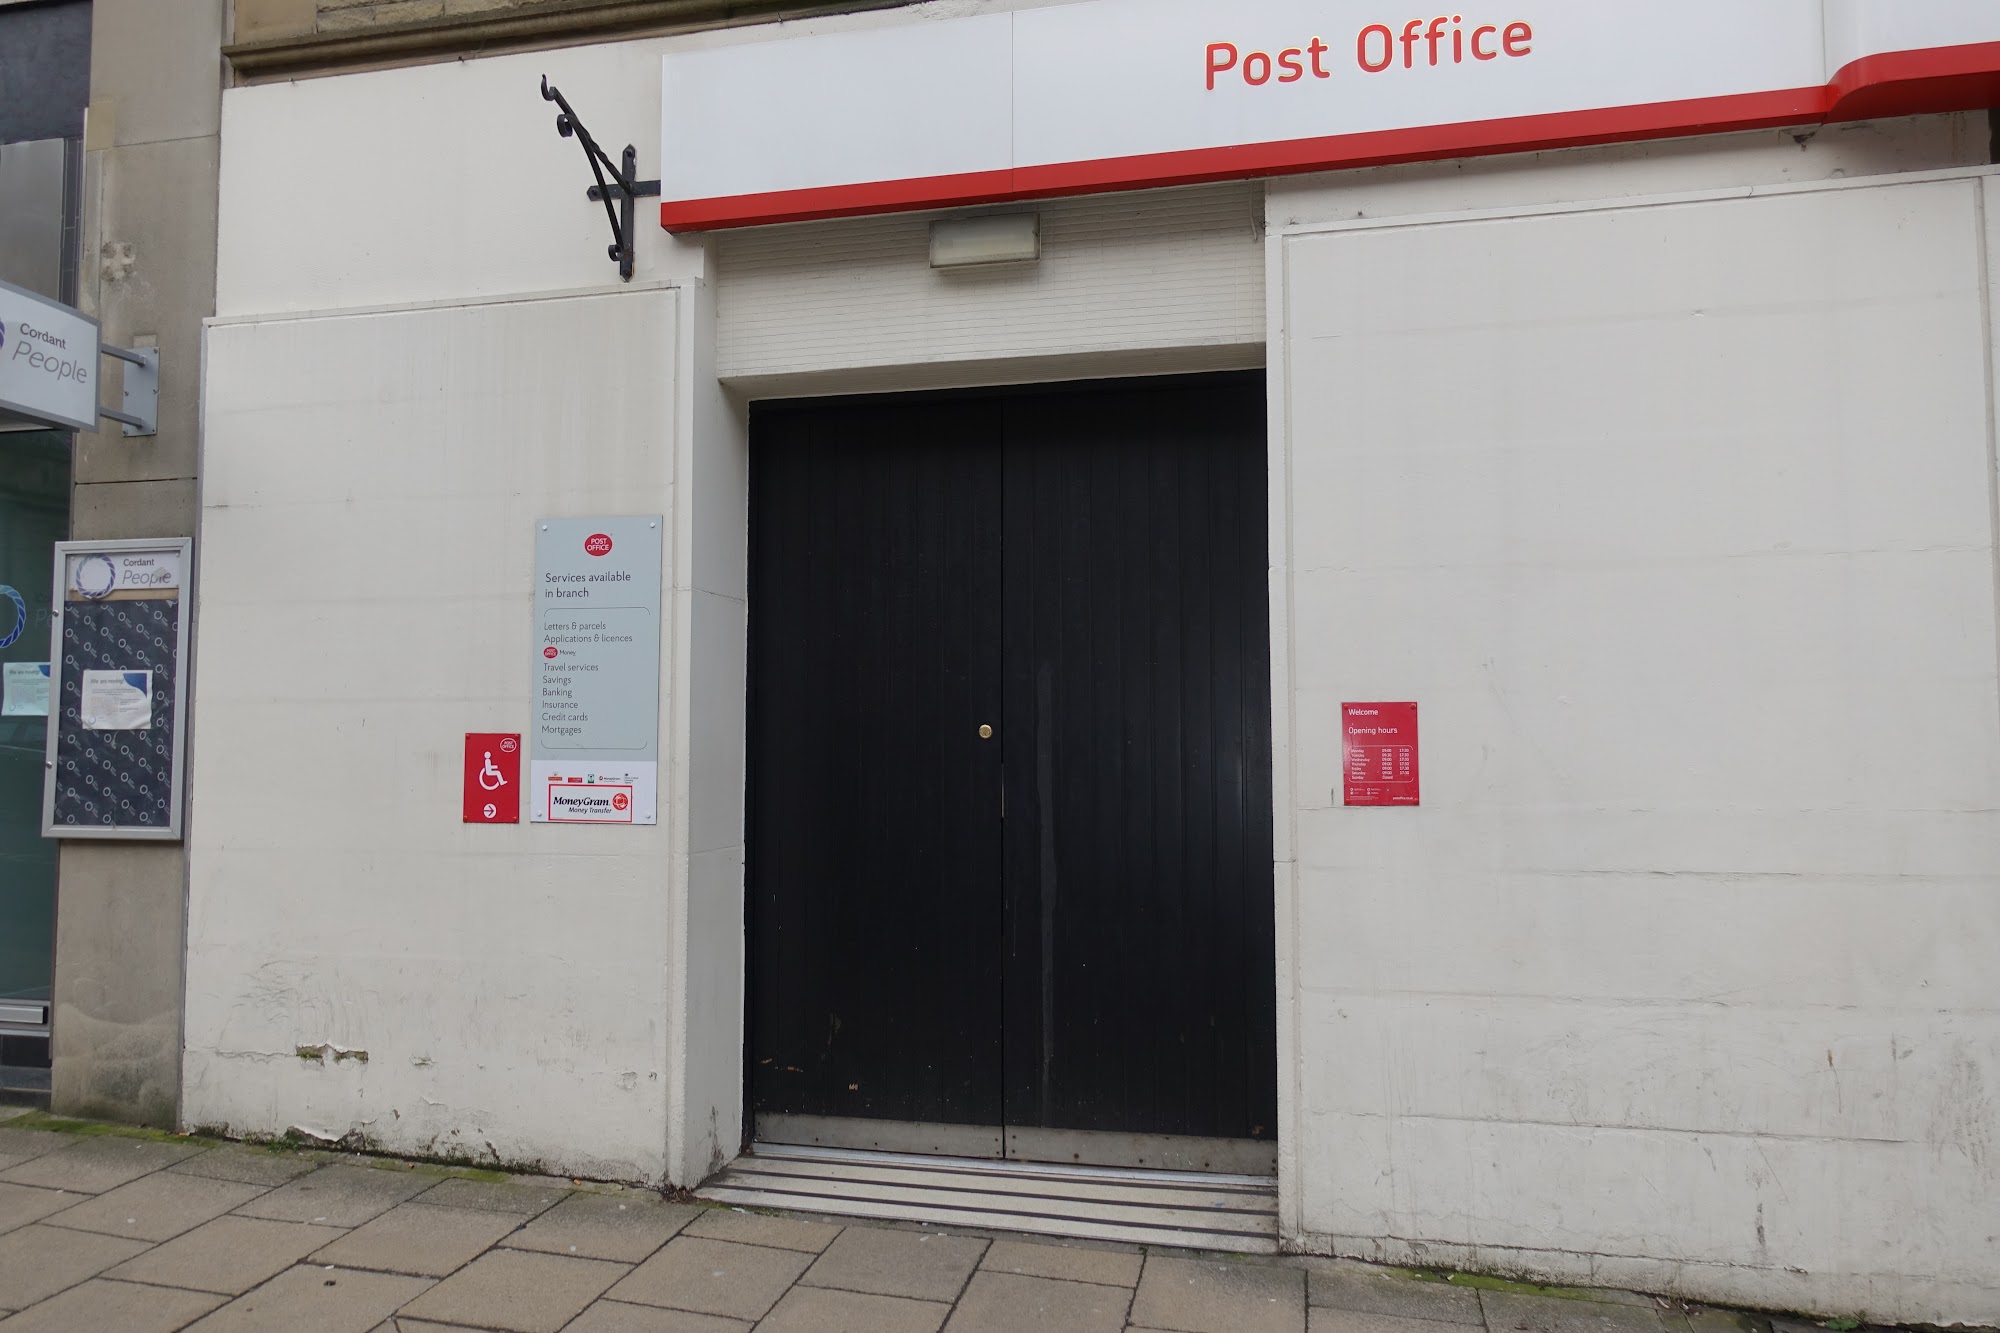 Harrogate Post Office